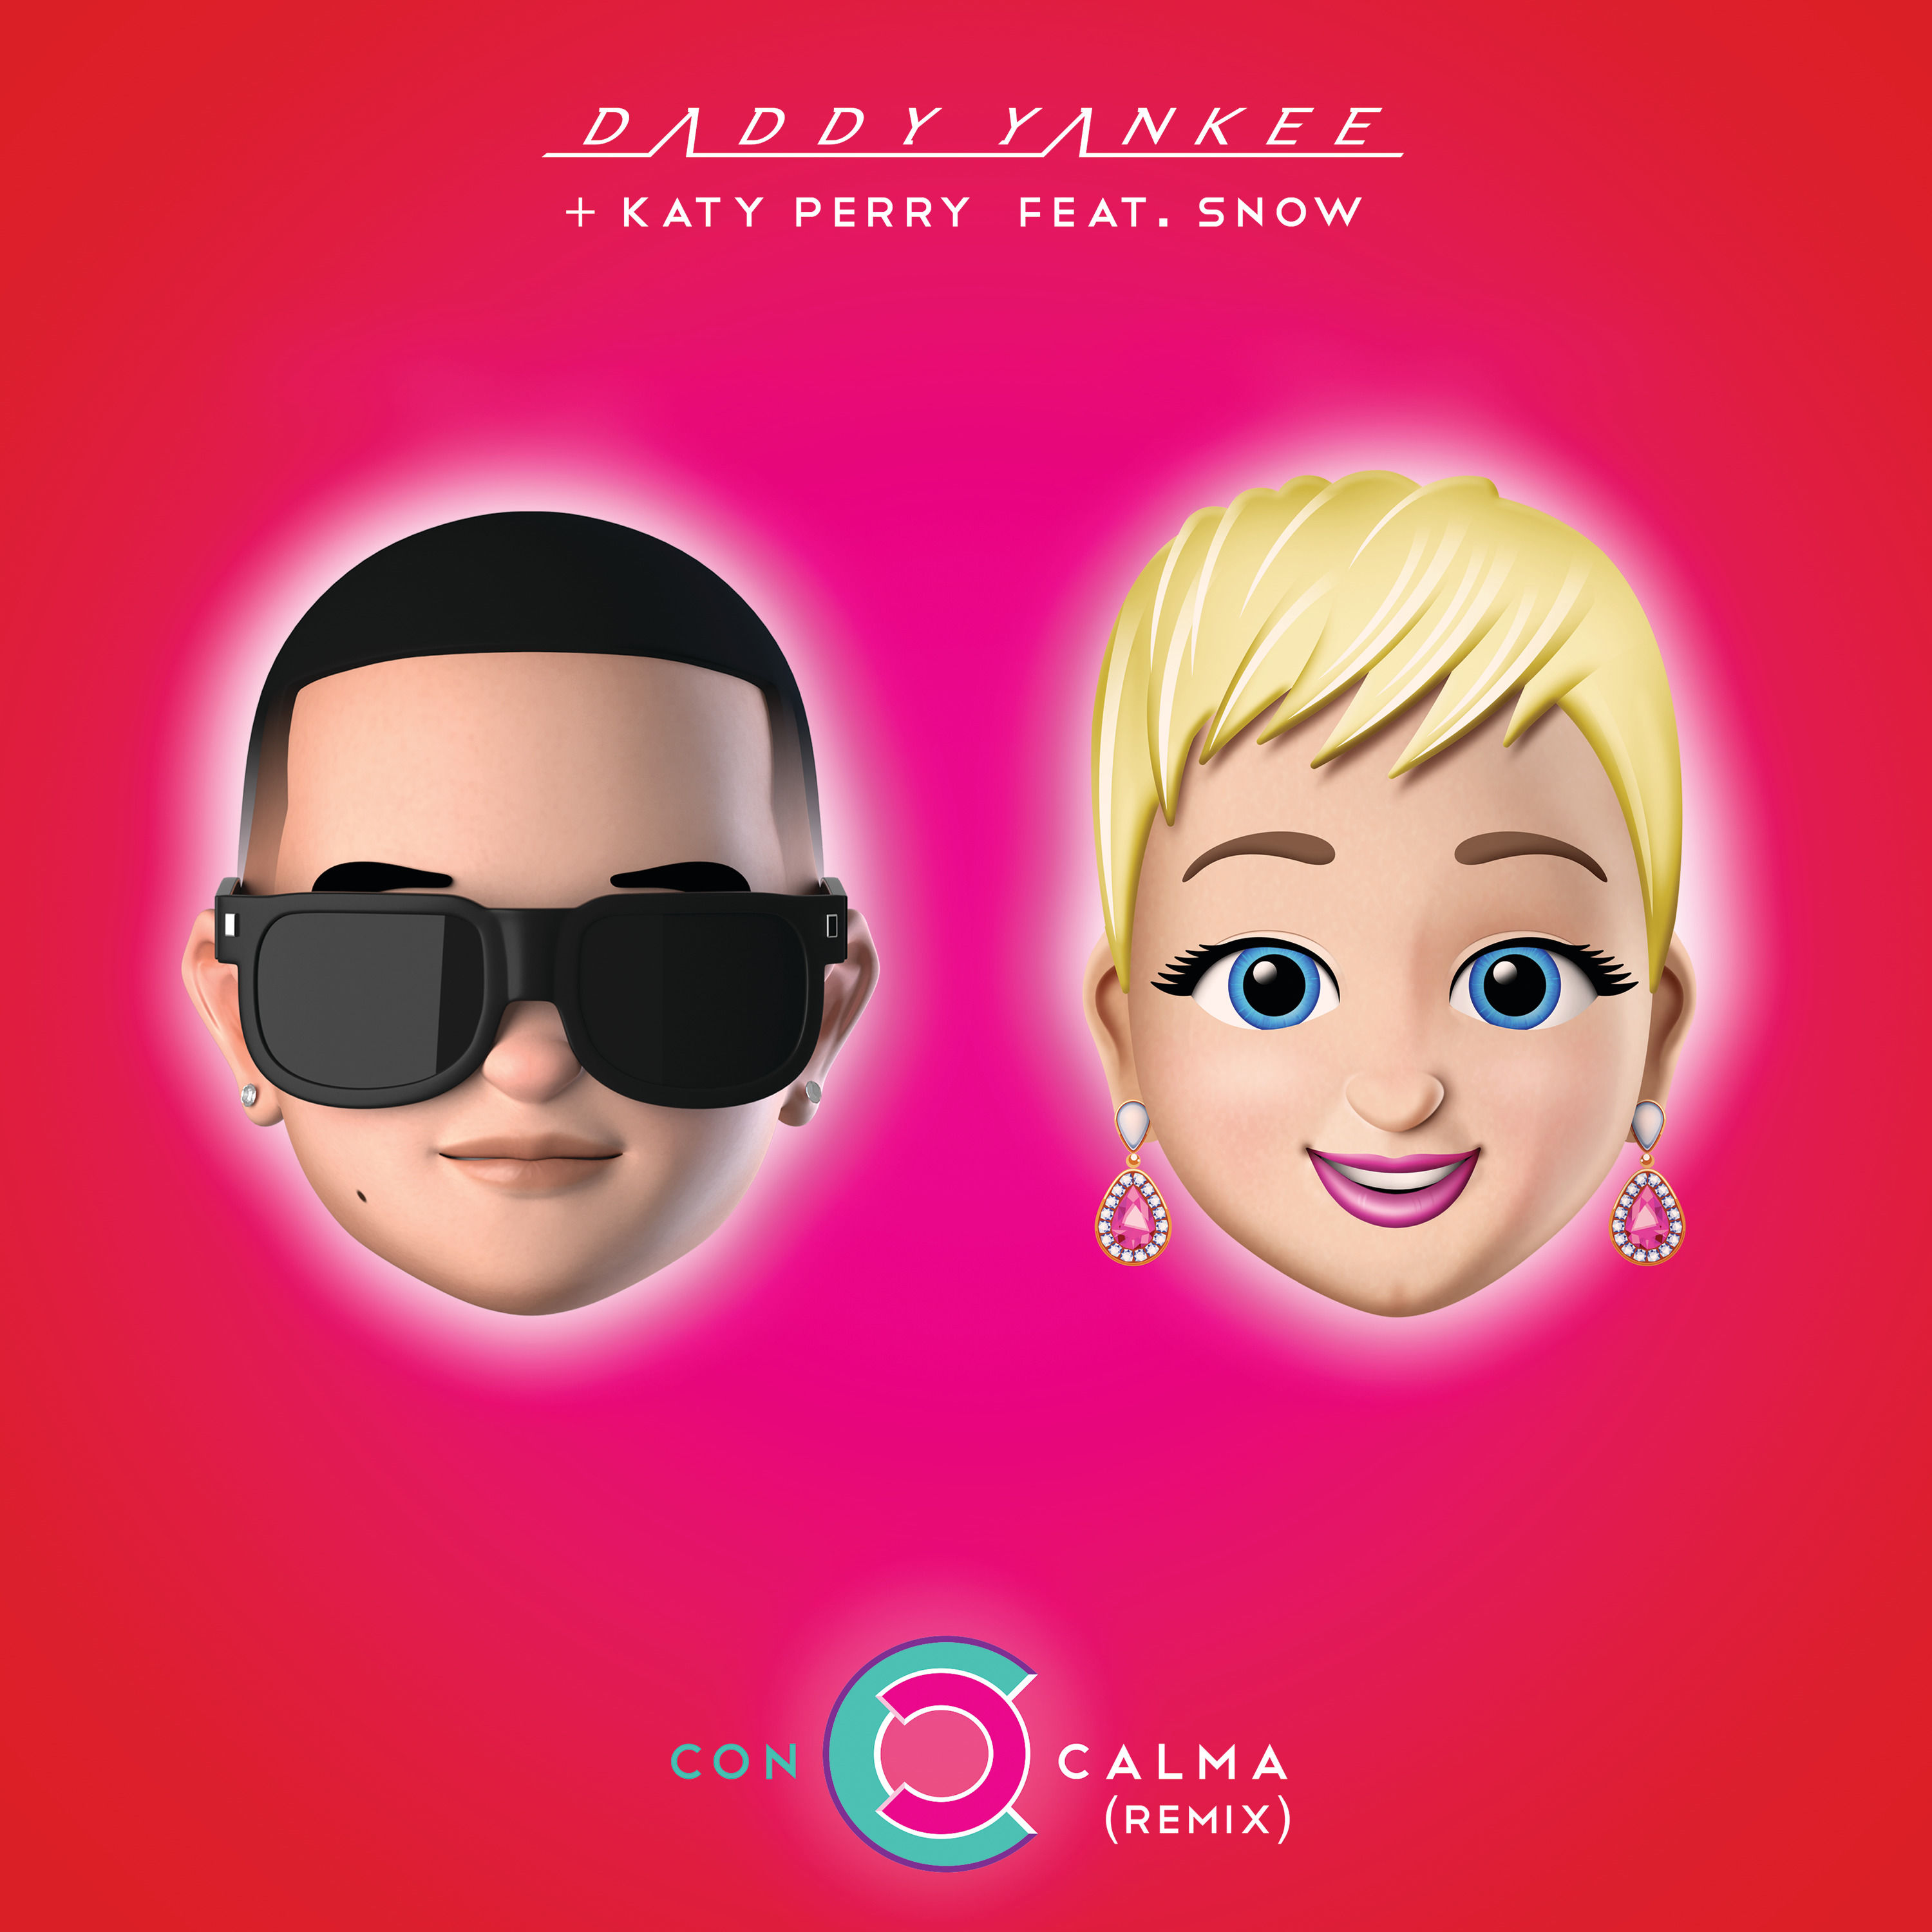 Daddy Yankee Ft. Katy Perry - Con Calma.mp3